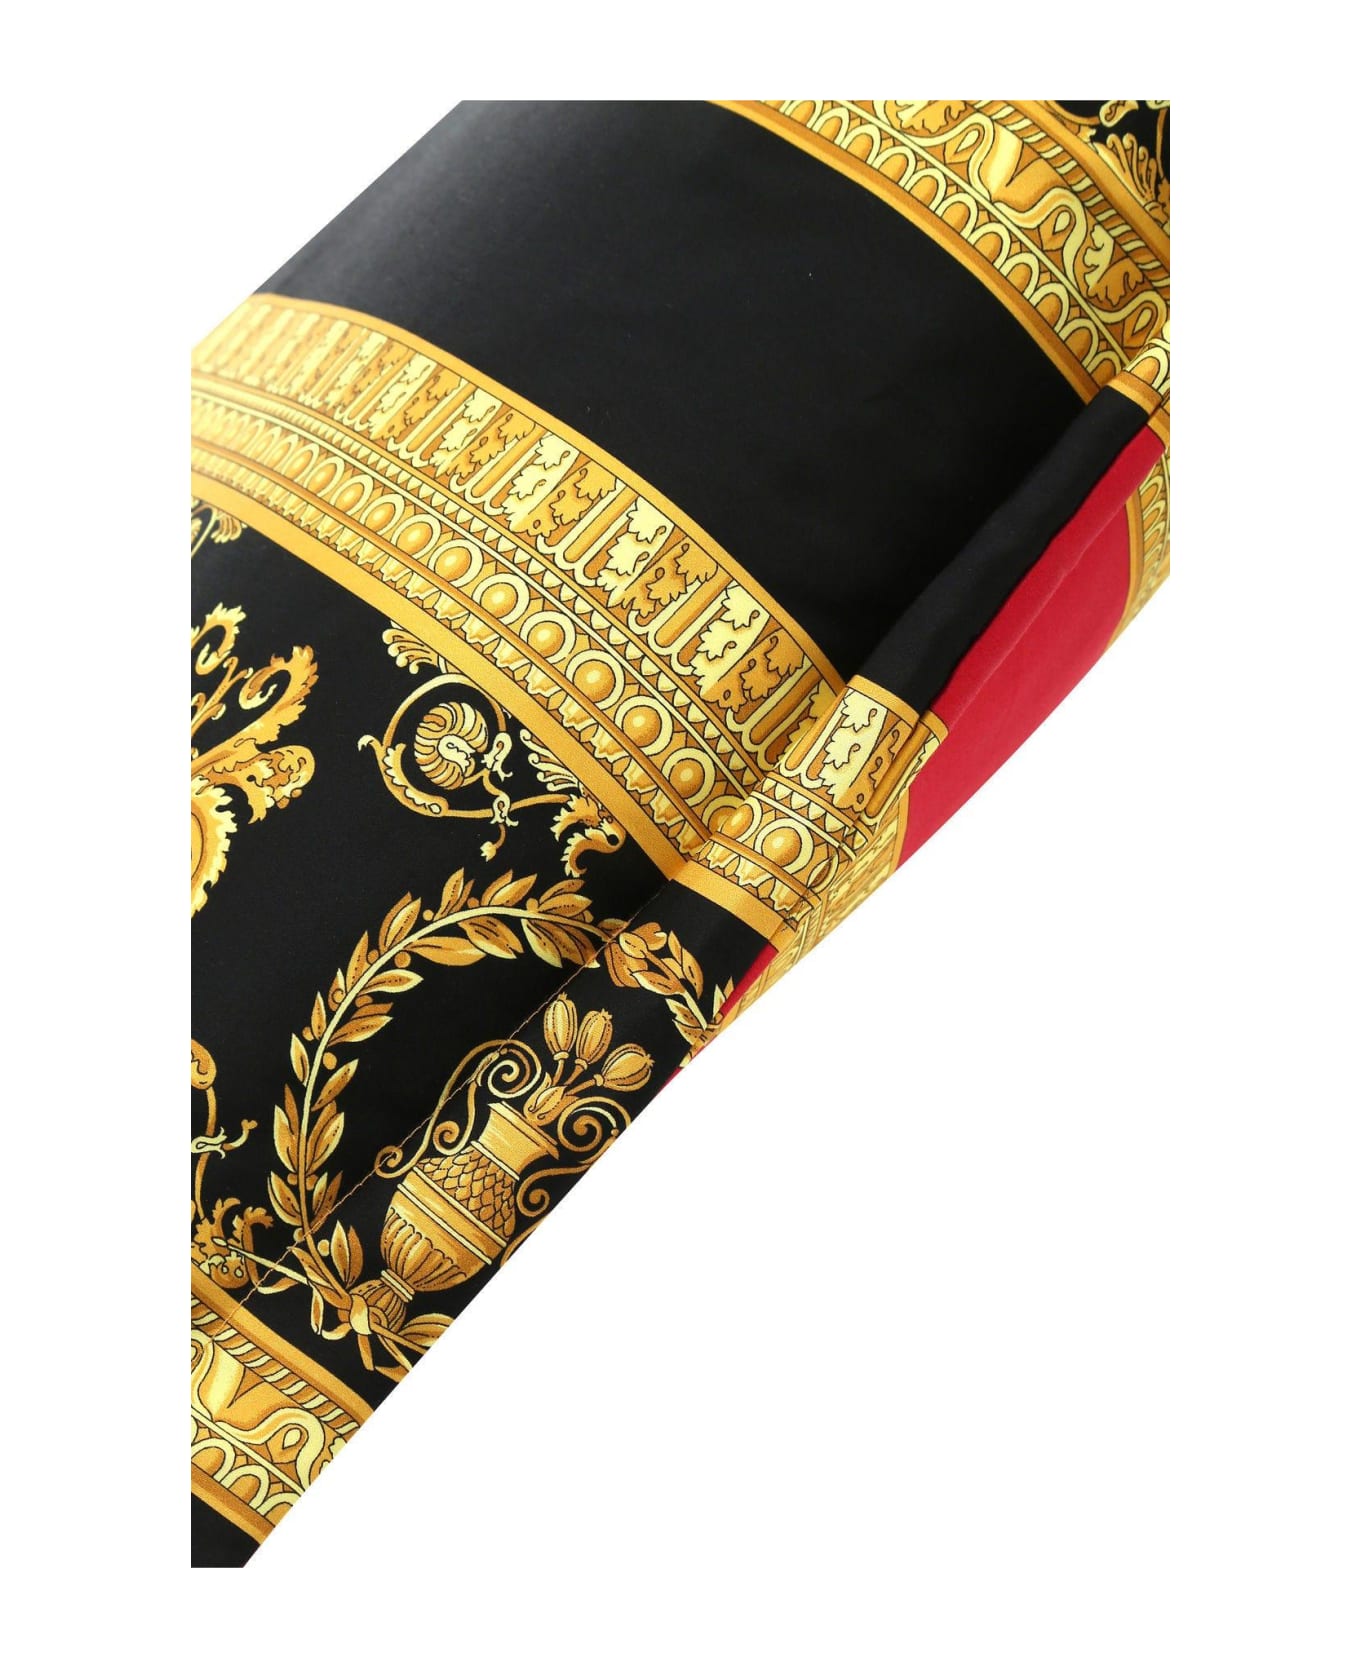 Versace I Love Baroque Pillow - Rosso-nero-oro